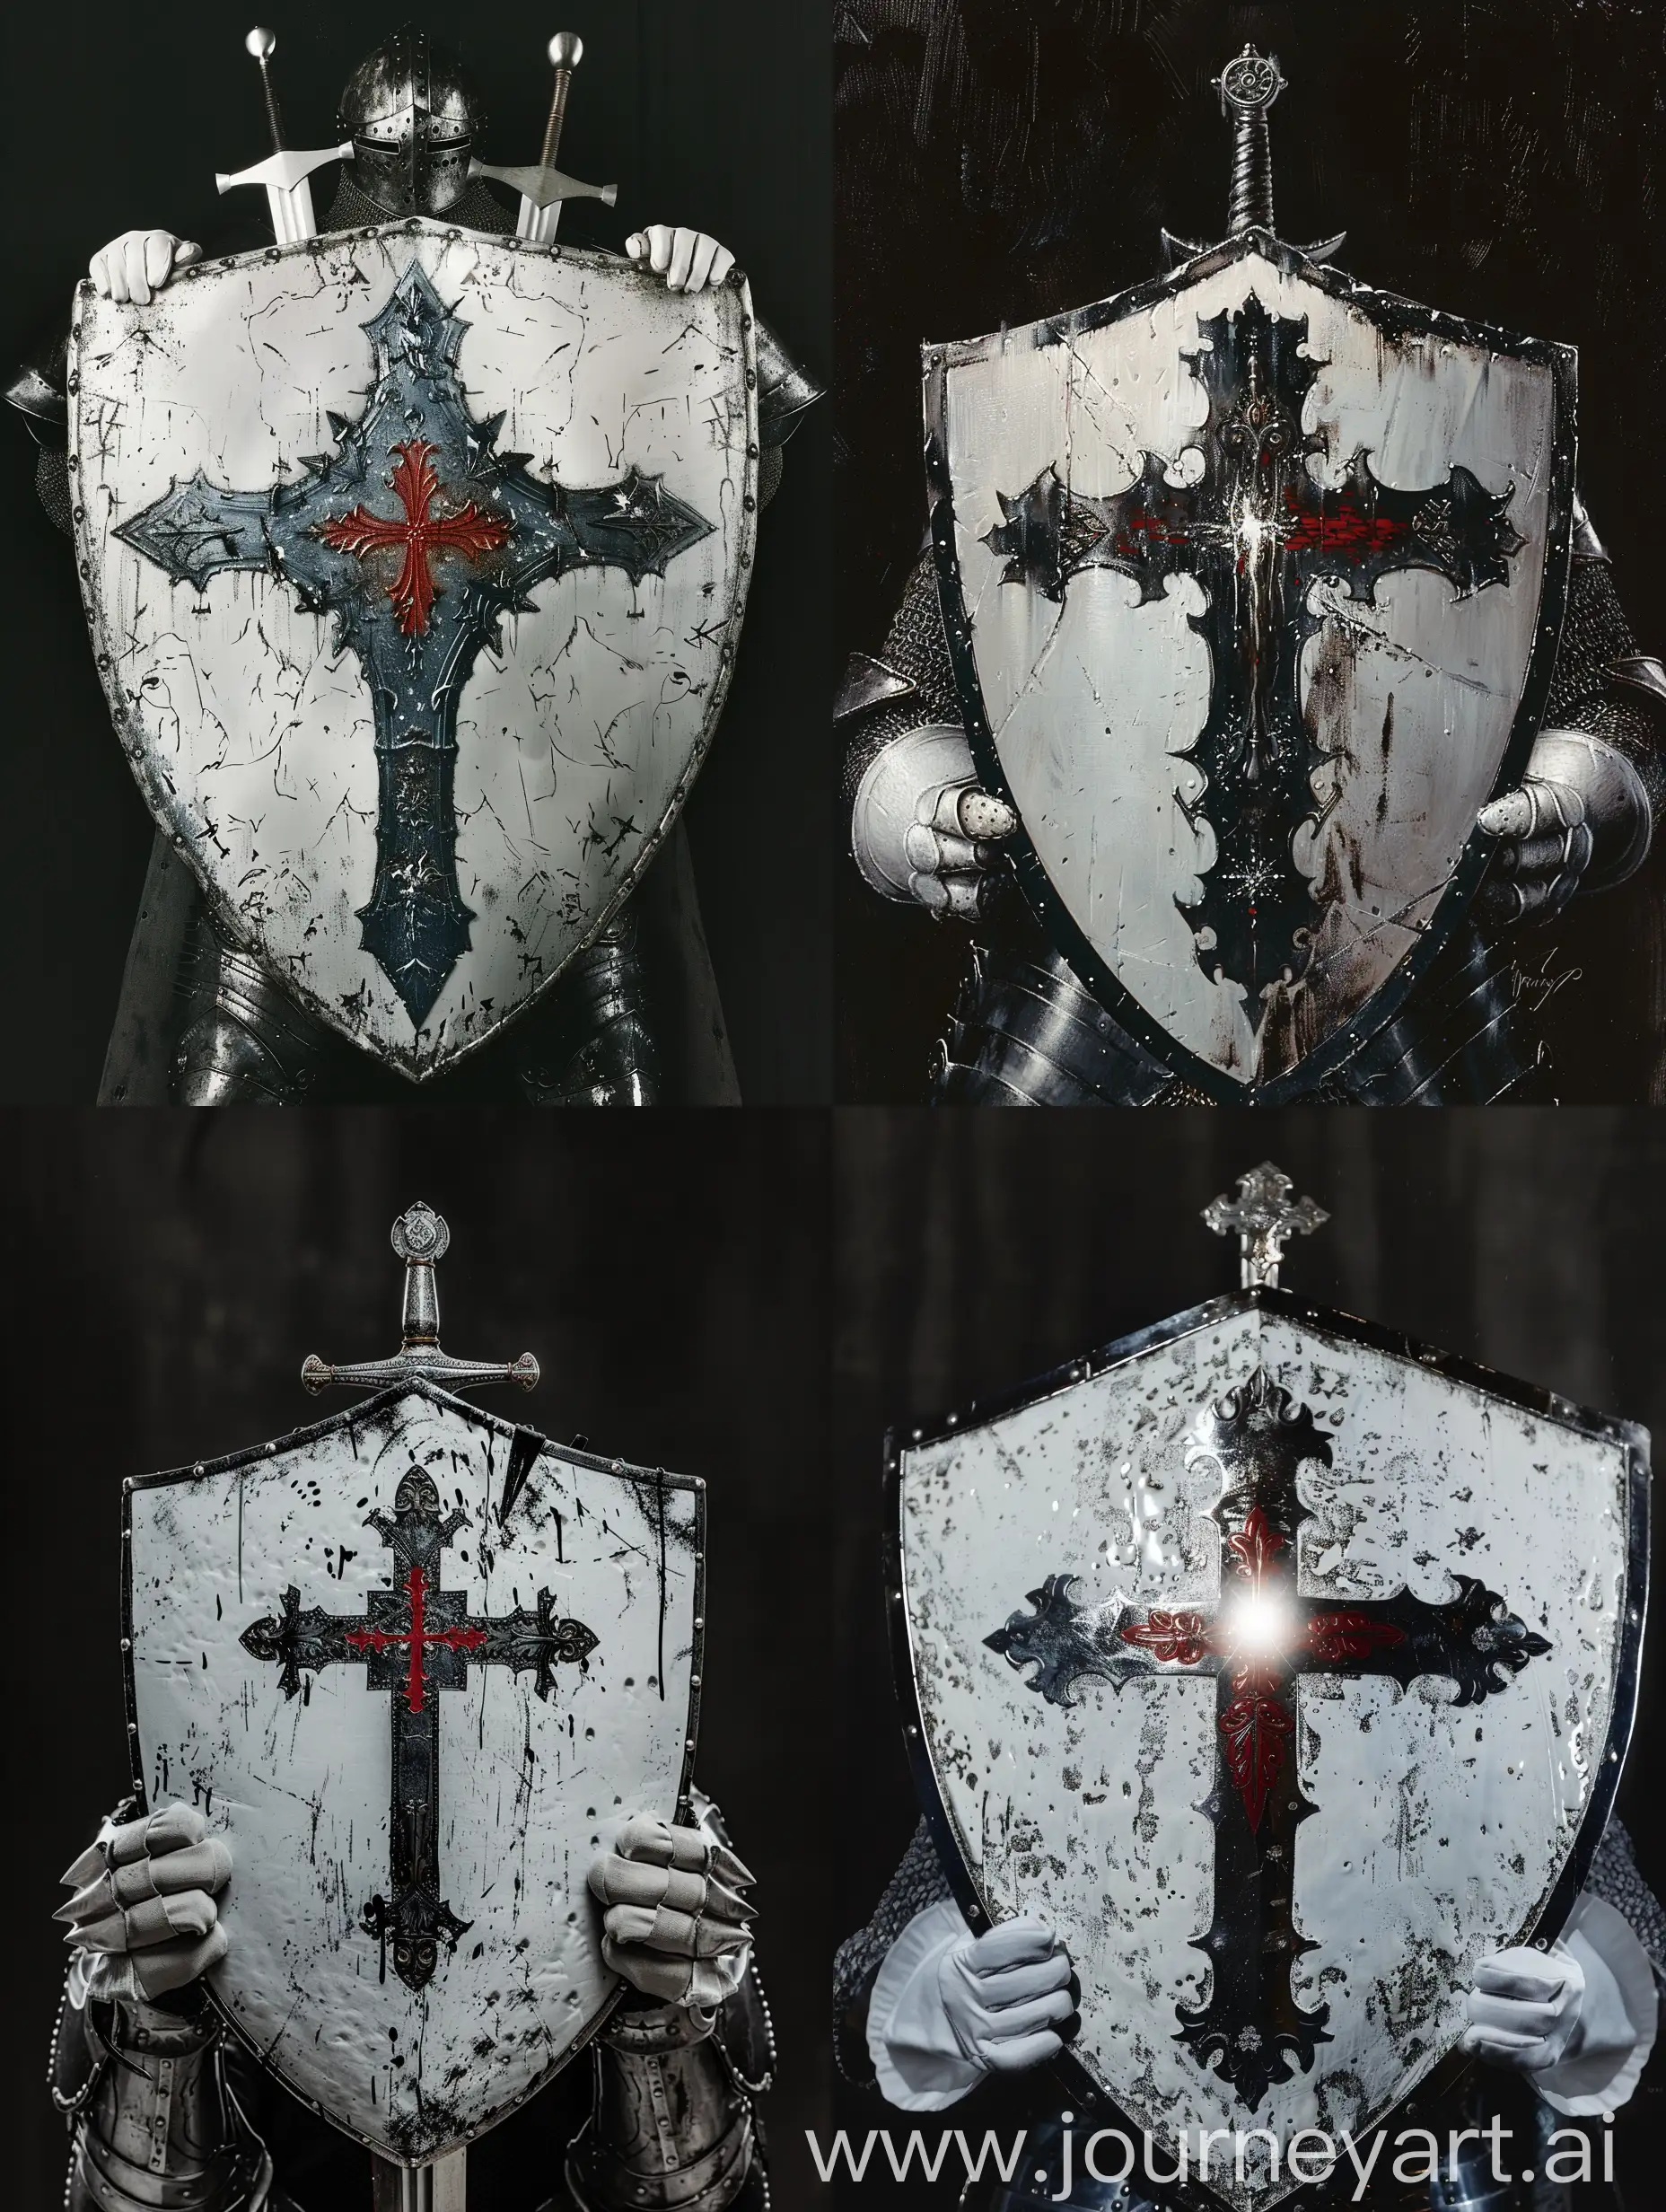 Белый серебряный щит рыцаря с черными краями, за щитом серебряный меч а, меч держат латные перчатки белого цвета, на щите изображён красный крест от которого исходит белый свет. 

